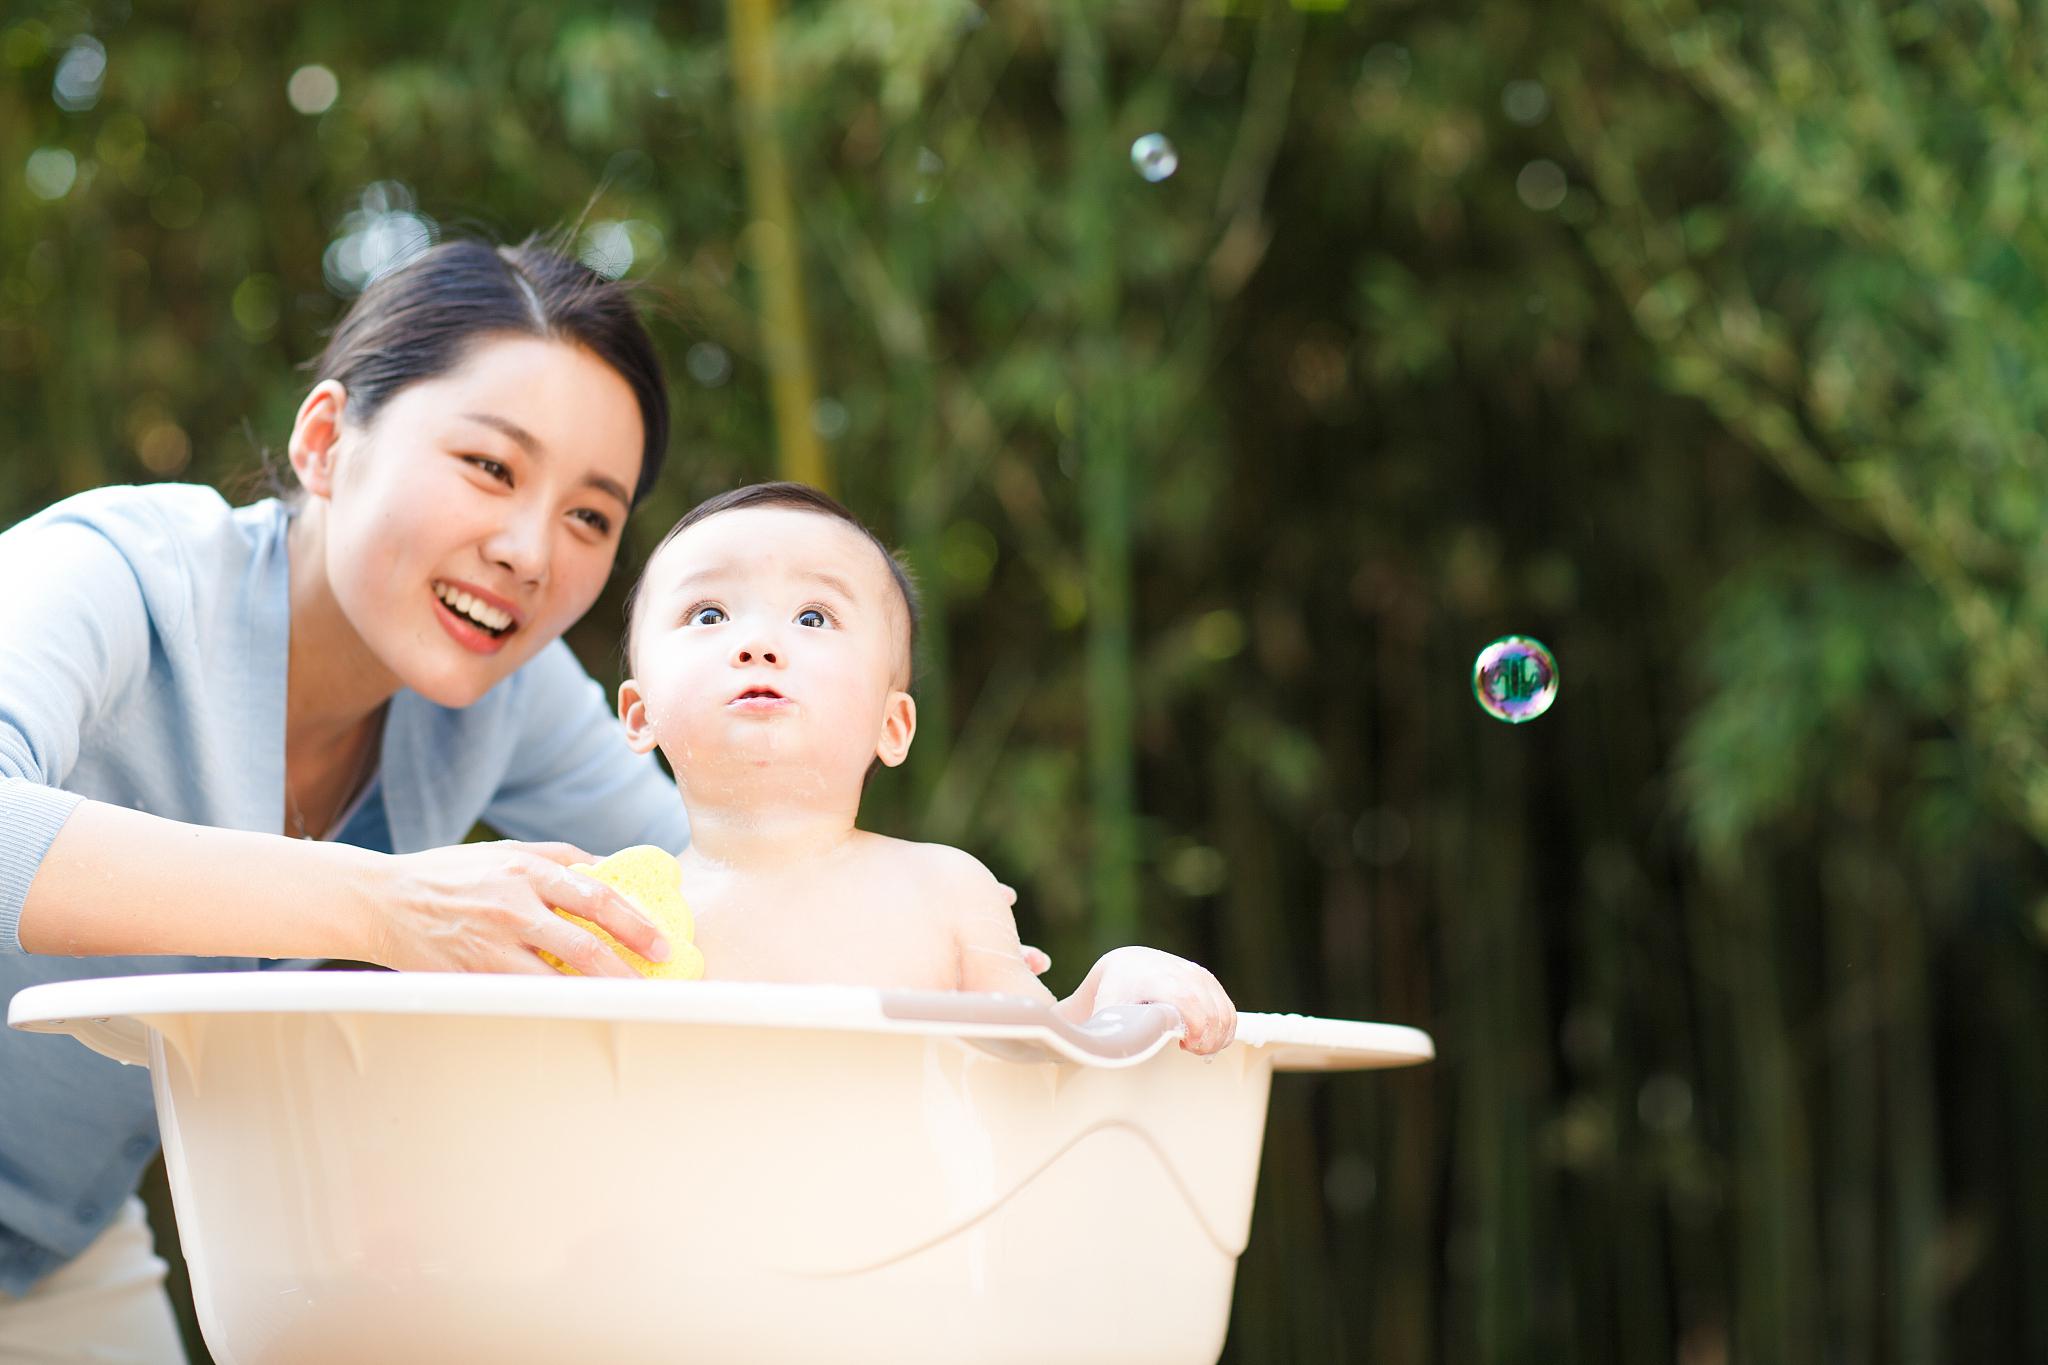 洗澡对于宝宝来说不仅是保持清洁的重要方式,还能促进他们的发育和